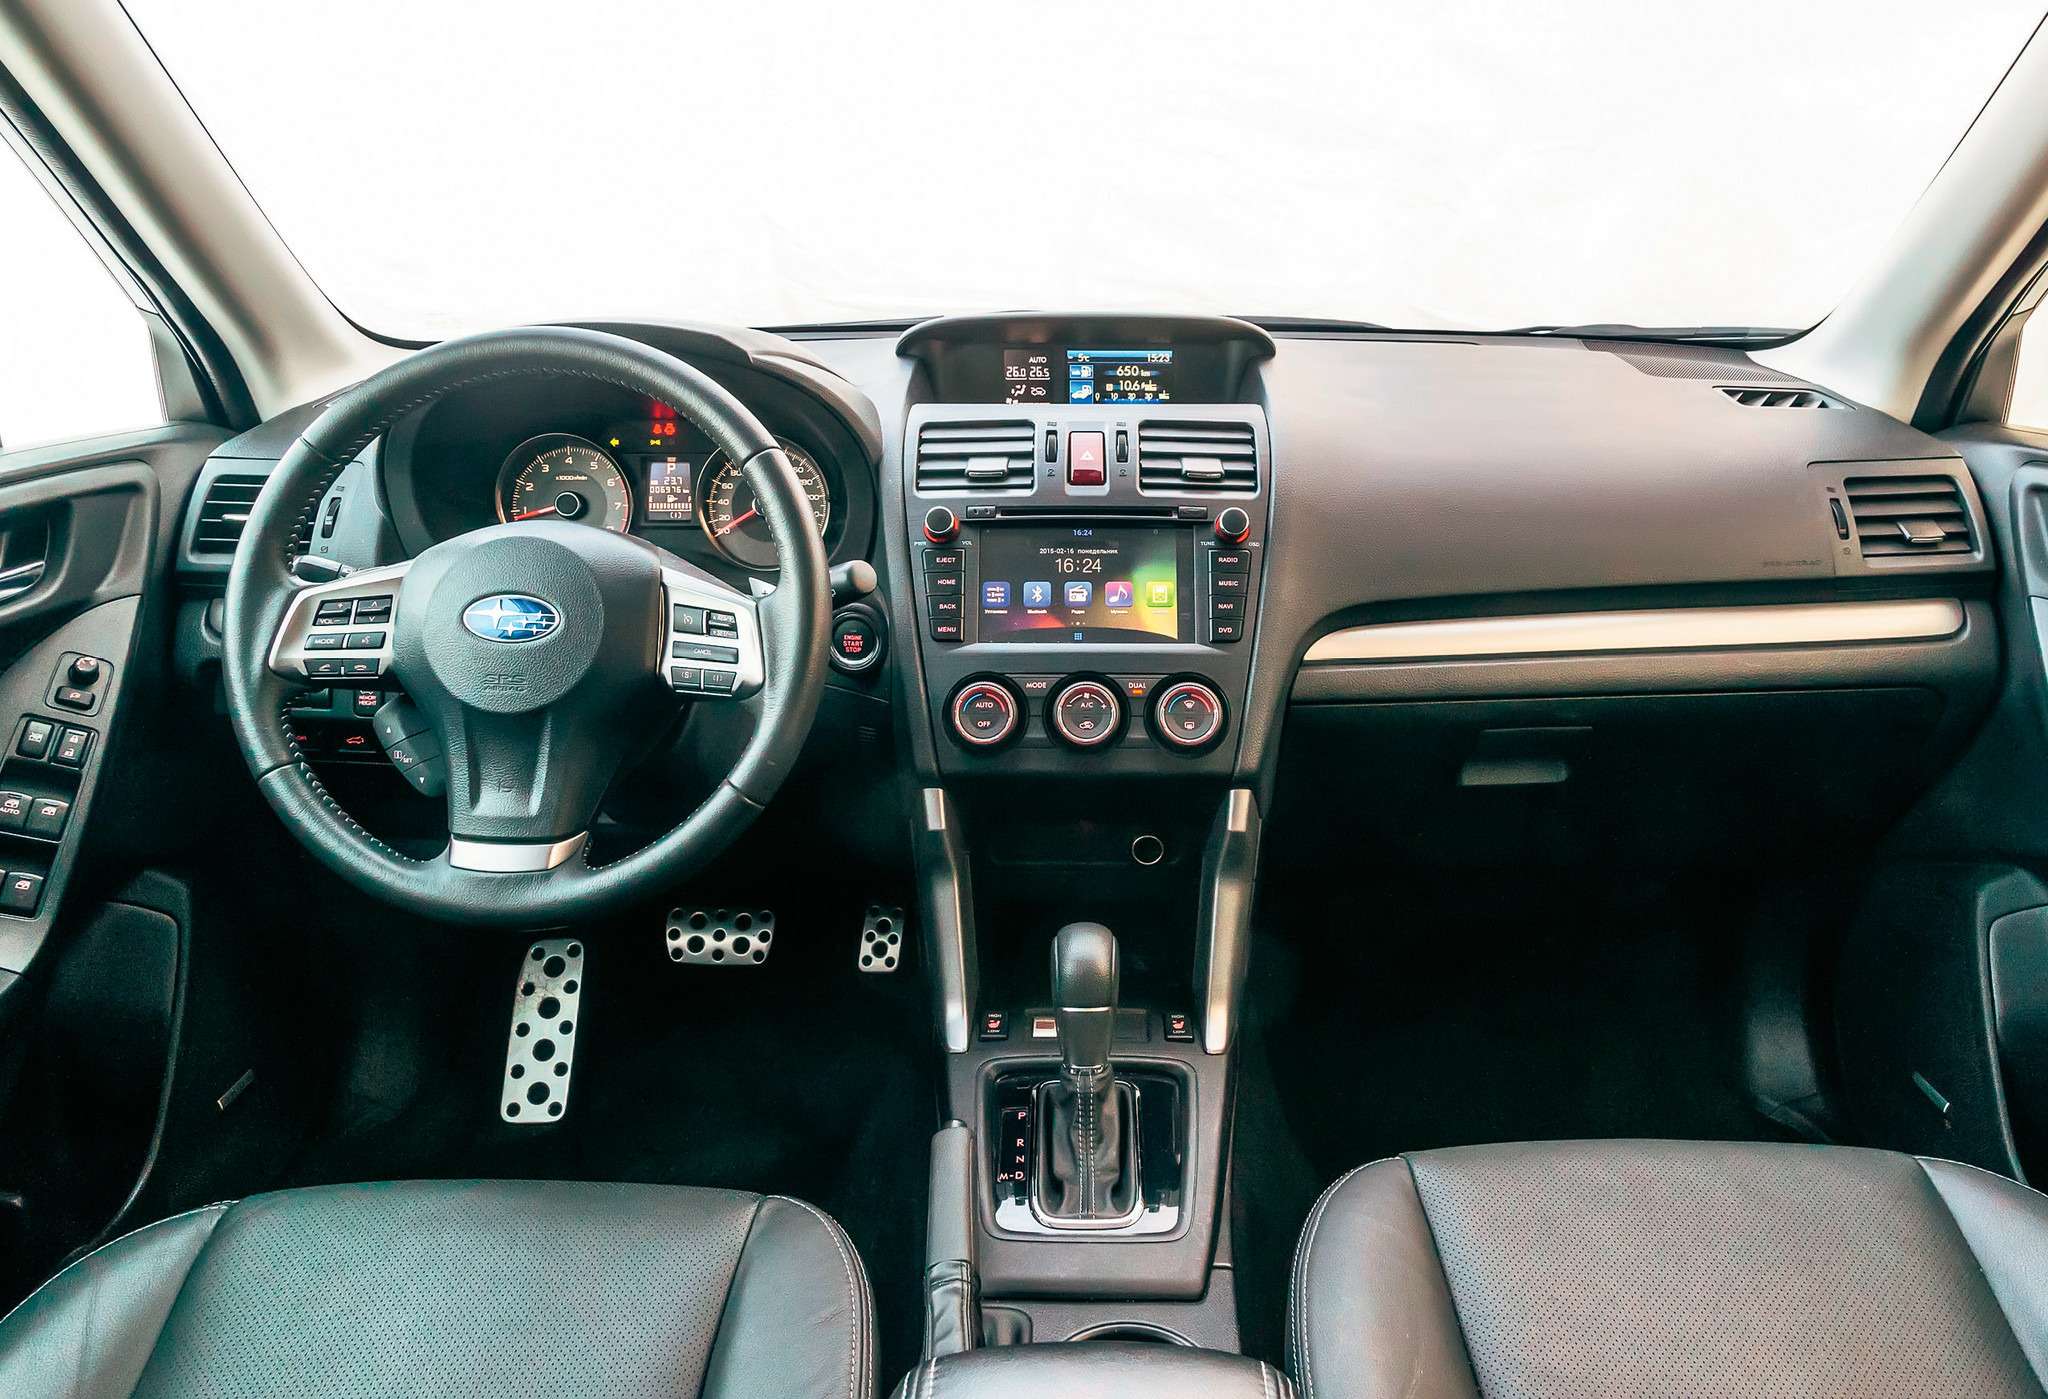 Subaru Forester. Интерьер Subaru удобен и неплохо отделан. Передняя панель – из мягкой пластмассы, органы управления хороши. Впечатление портит откровенно неудачная мультимедийная система на платформе Android да грубый пластик дверных панелей.